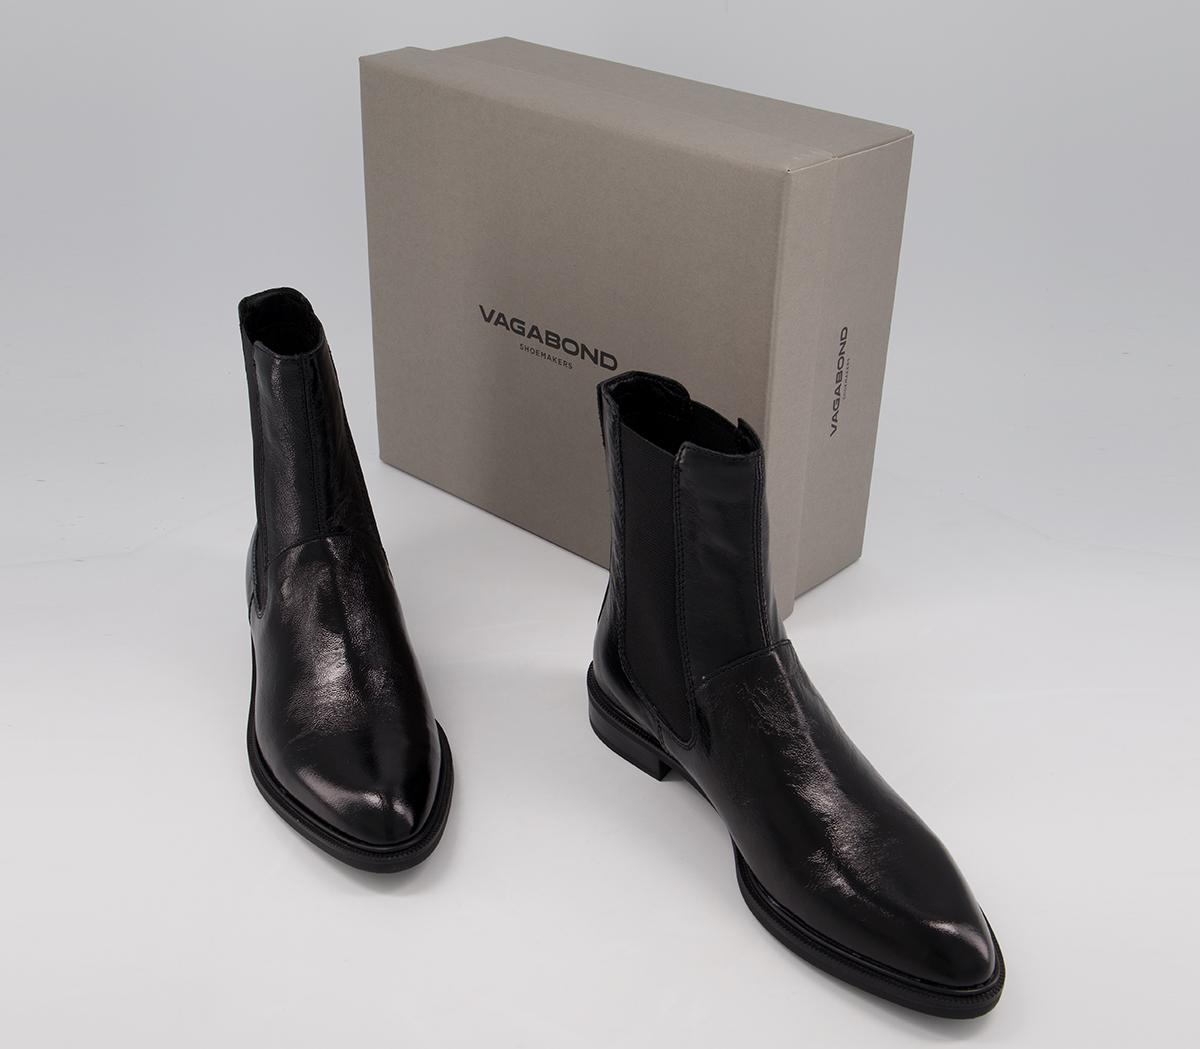 Vagabond Shoemakers Frances Chelsea Boots Black - Women's Ankle Boots